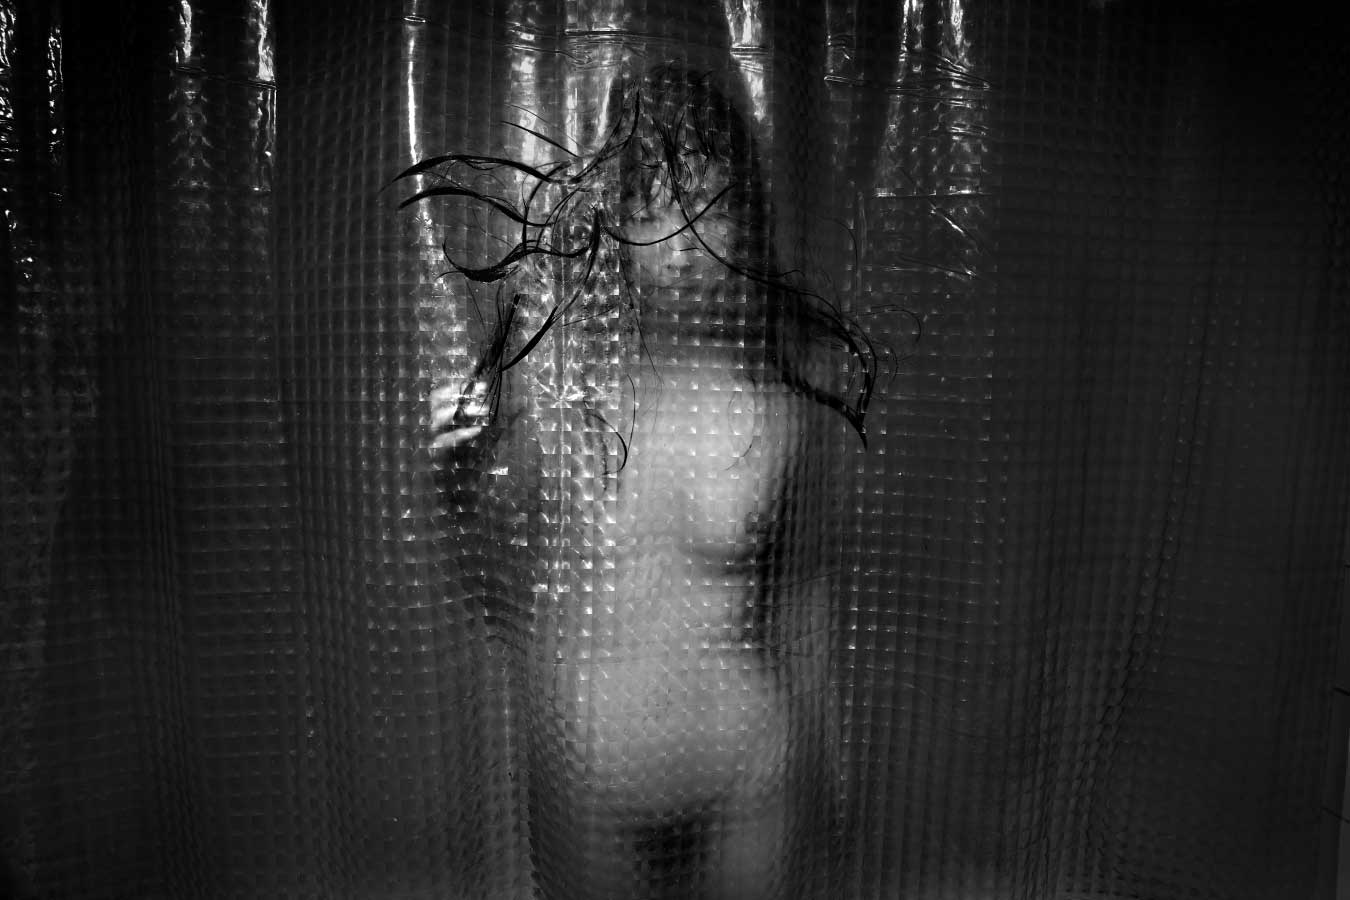 see through shower curtain